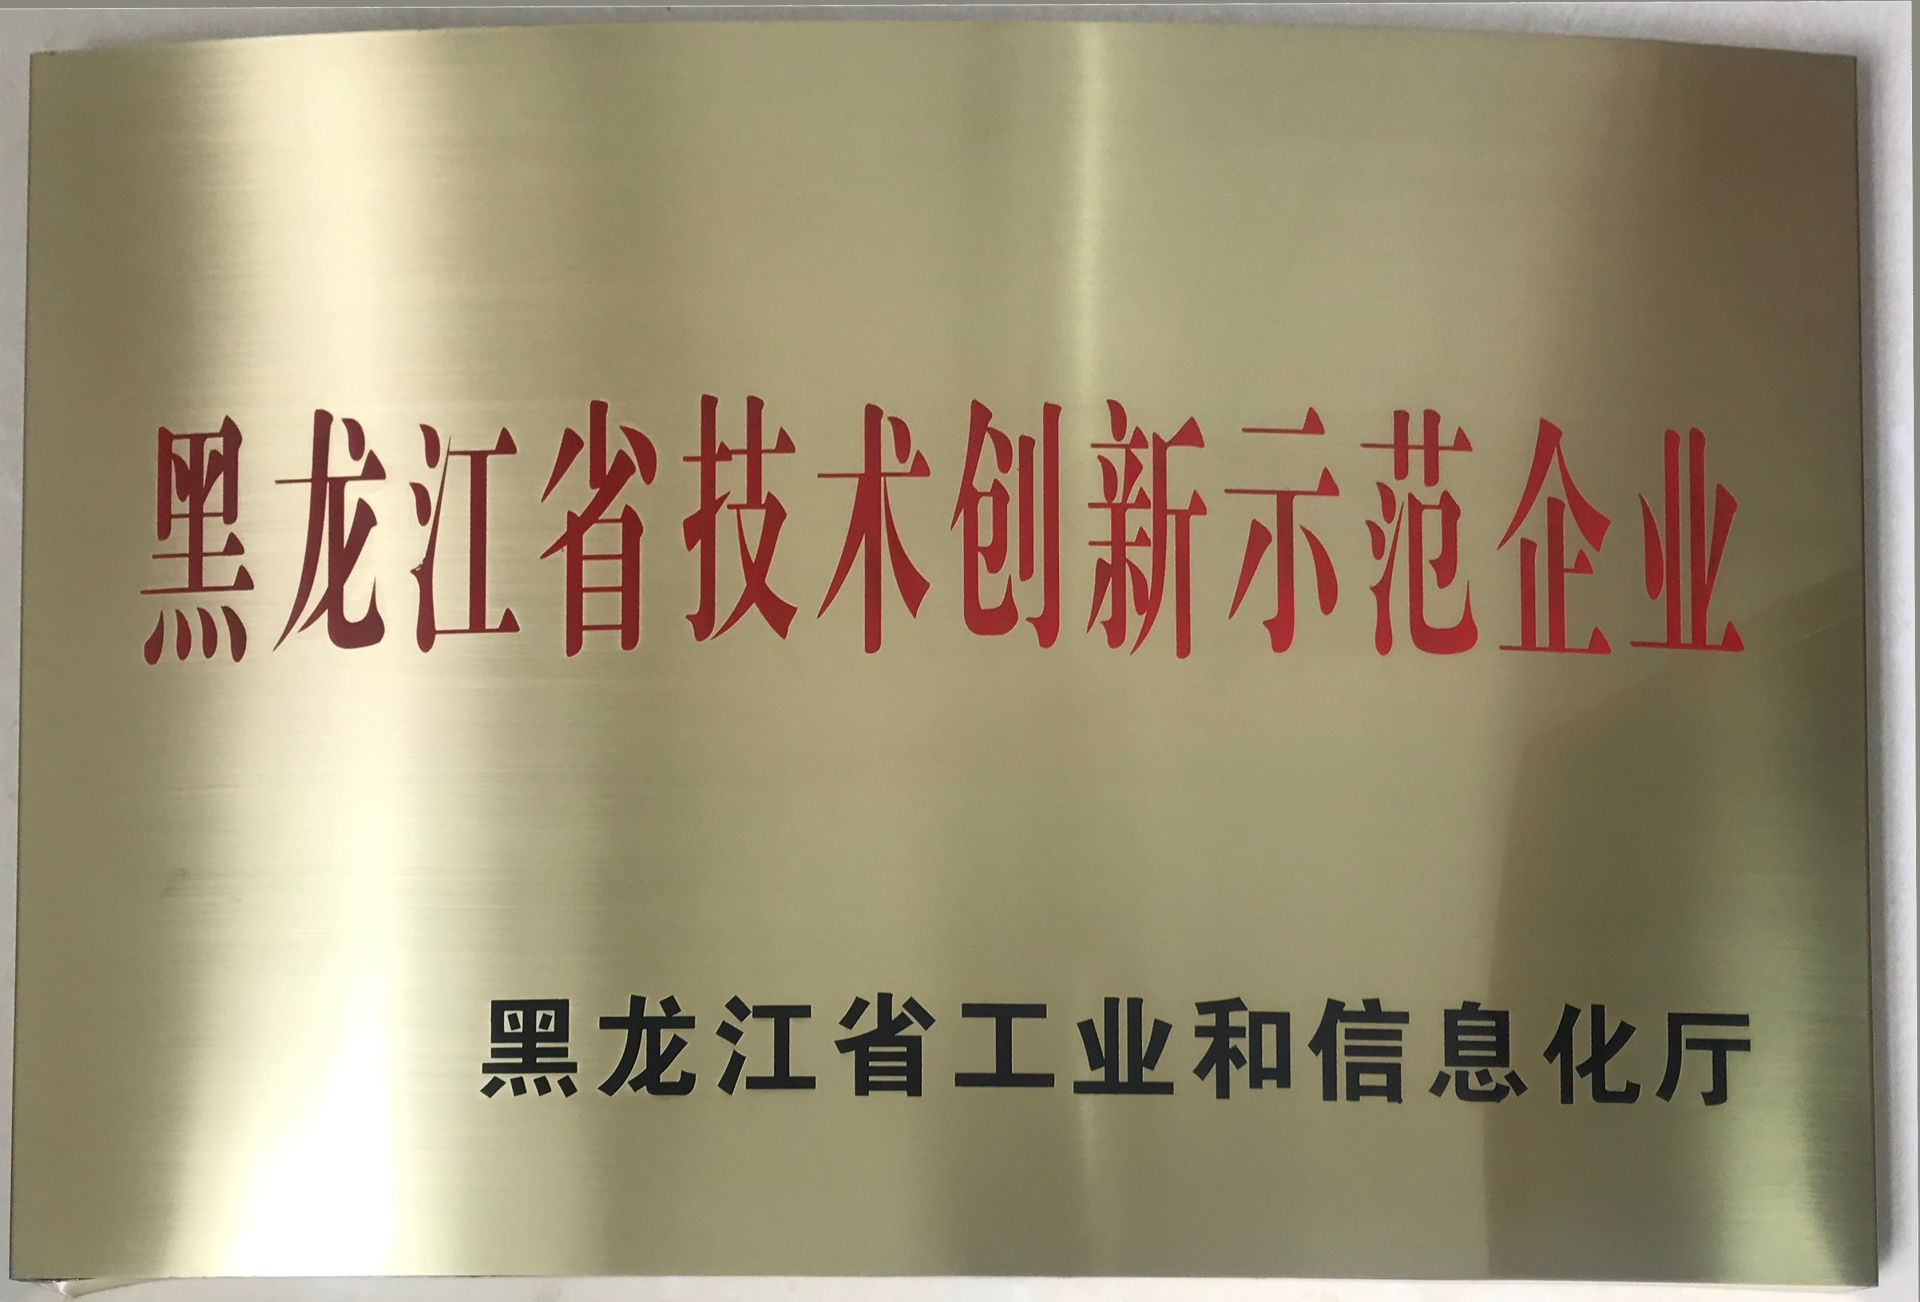 黑龙江省技术创新示范企业